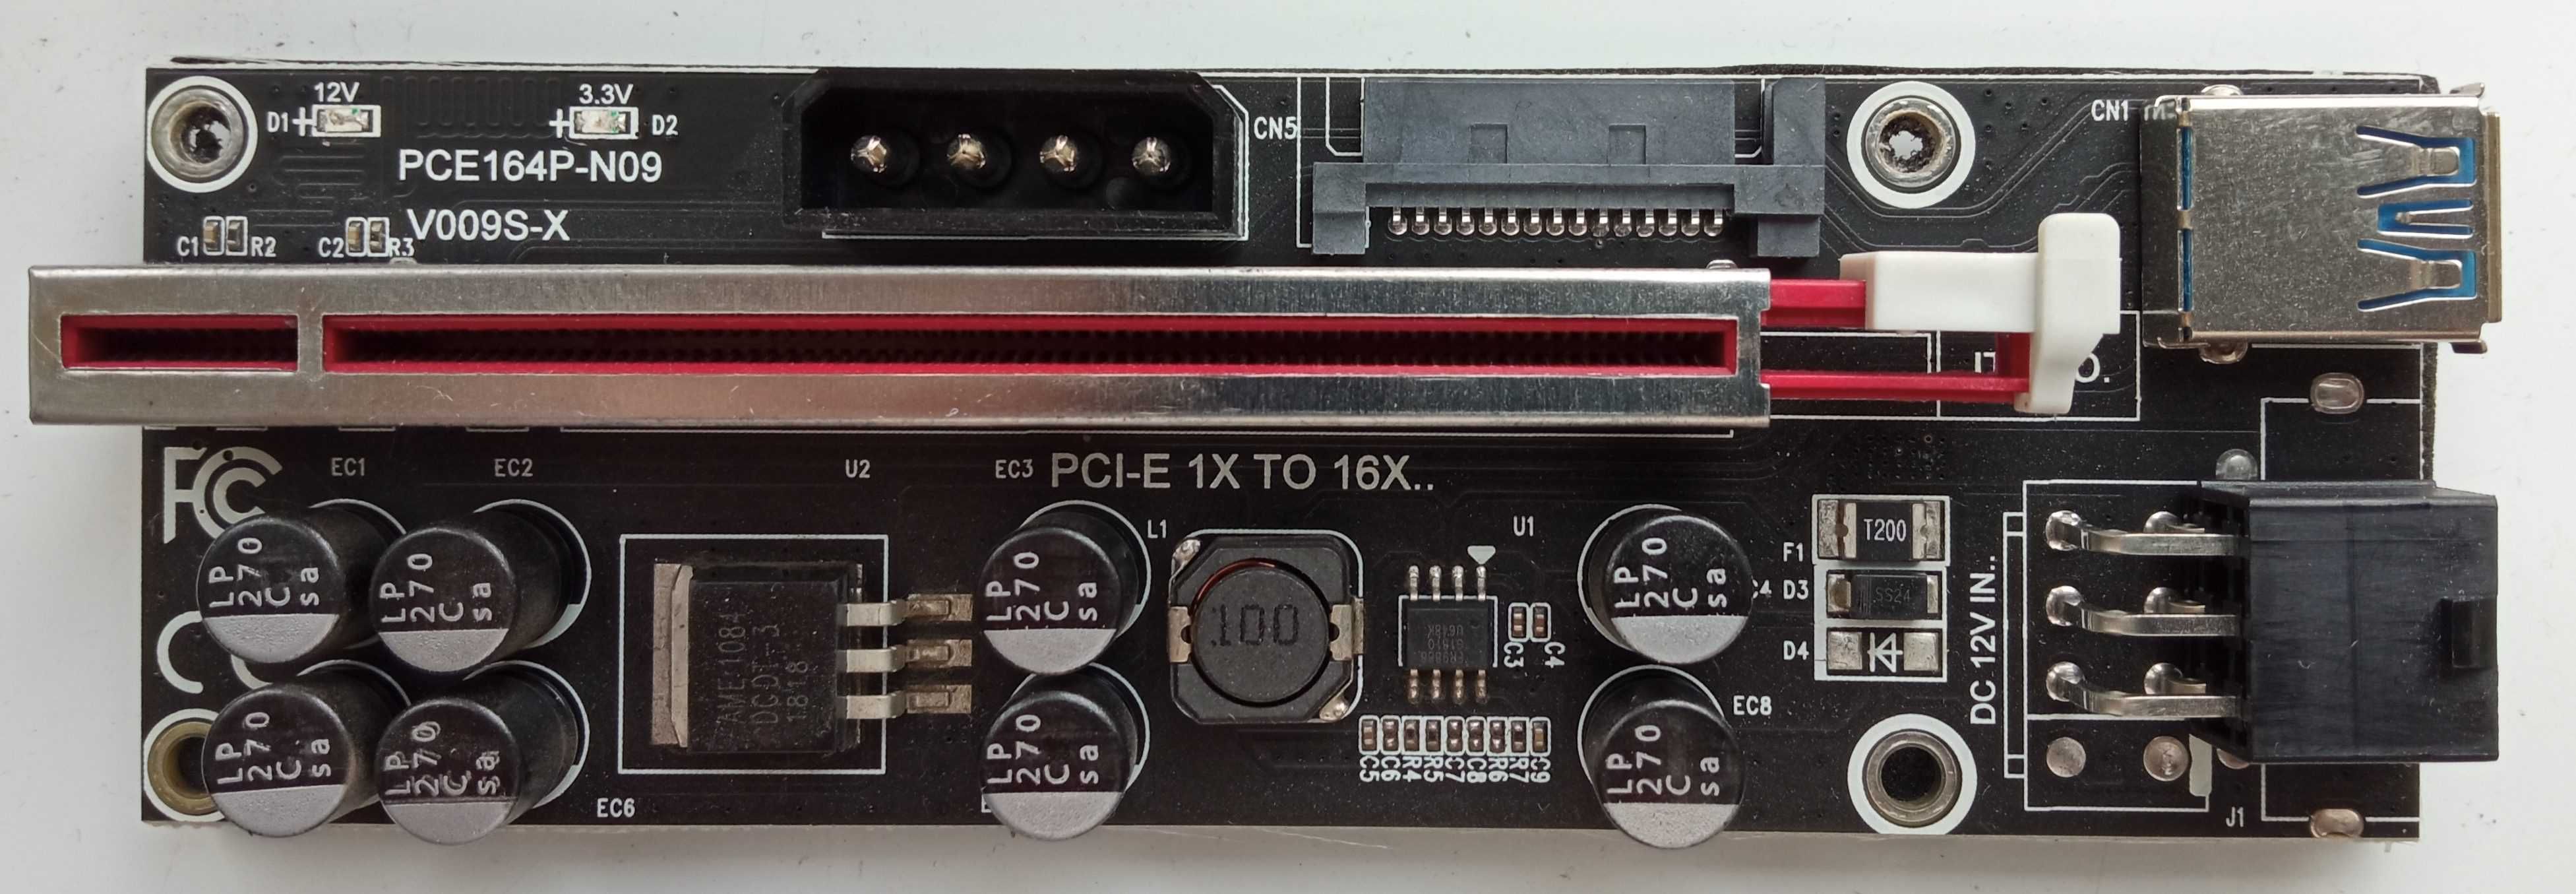 Рейзер Card PCI Express v.009S-X PCI-E 1X to 16X